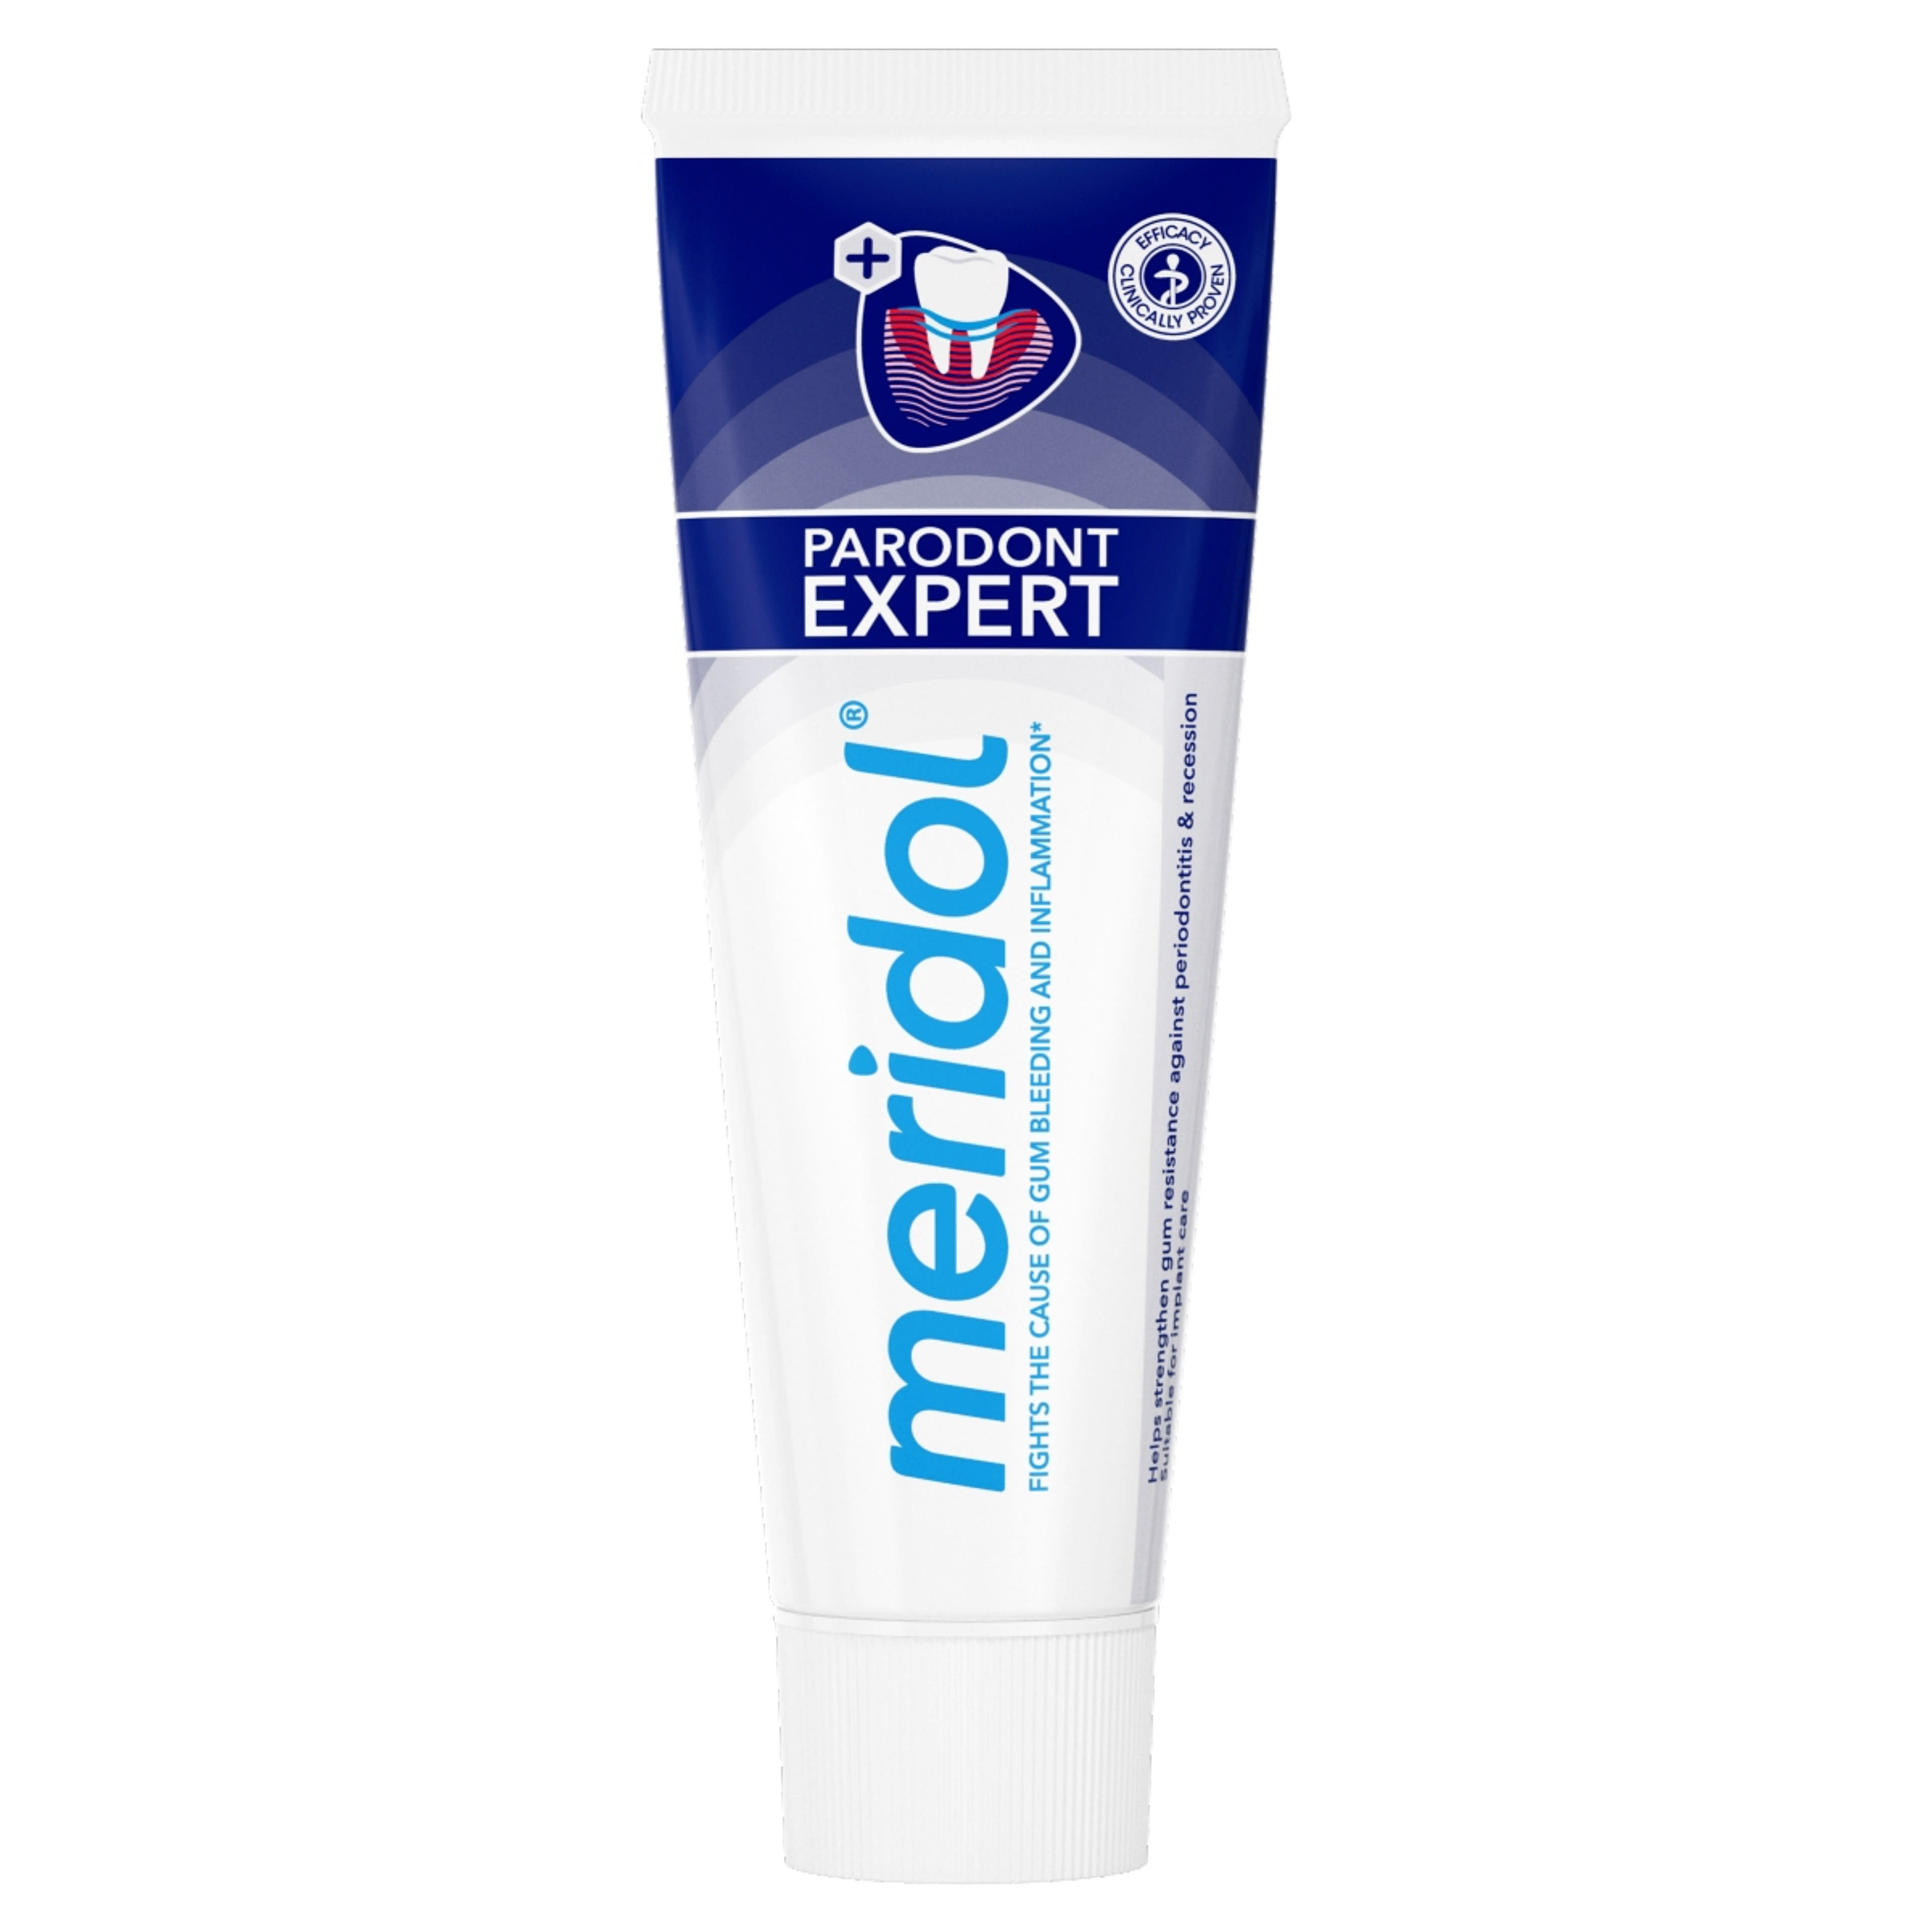 Meridol Paradont Expect fogkrém - 75 ml-2